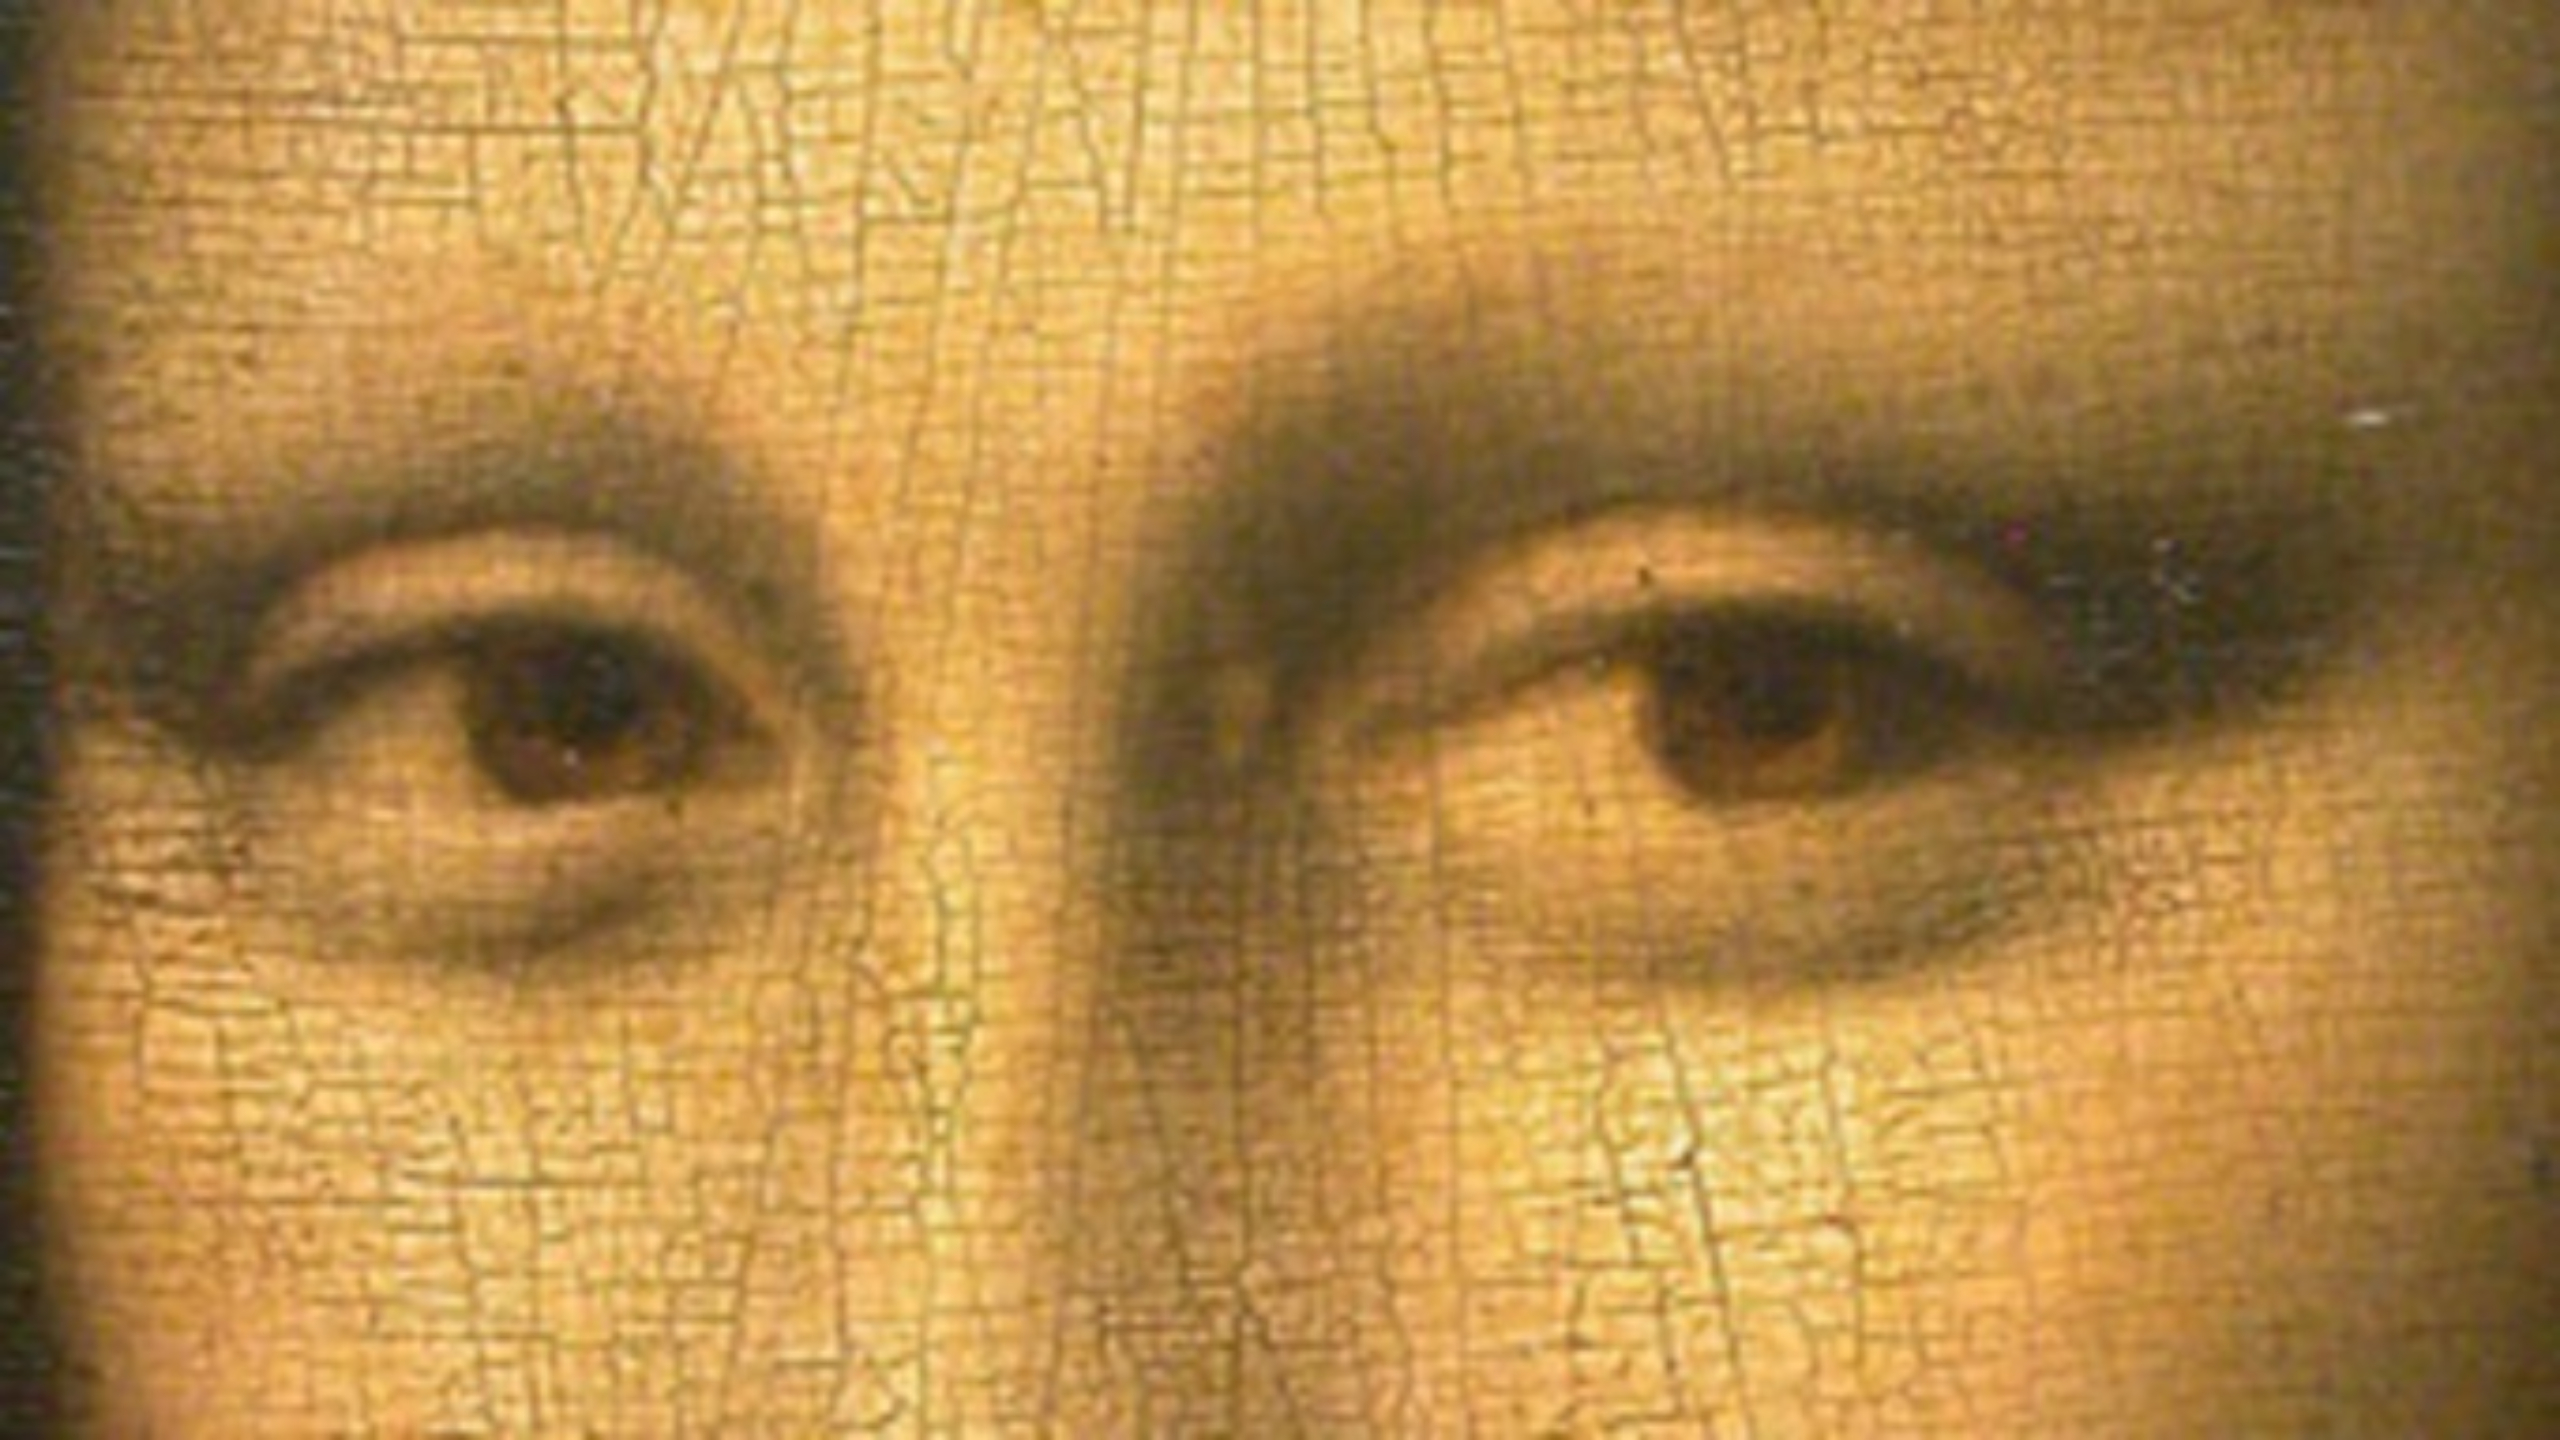 Atto di Liberazione conferma che la madre di Leonardo Da Vinci era una schiava, il documento è stato rinvenuto a Firenze.